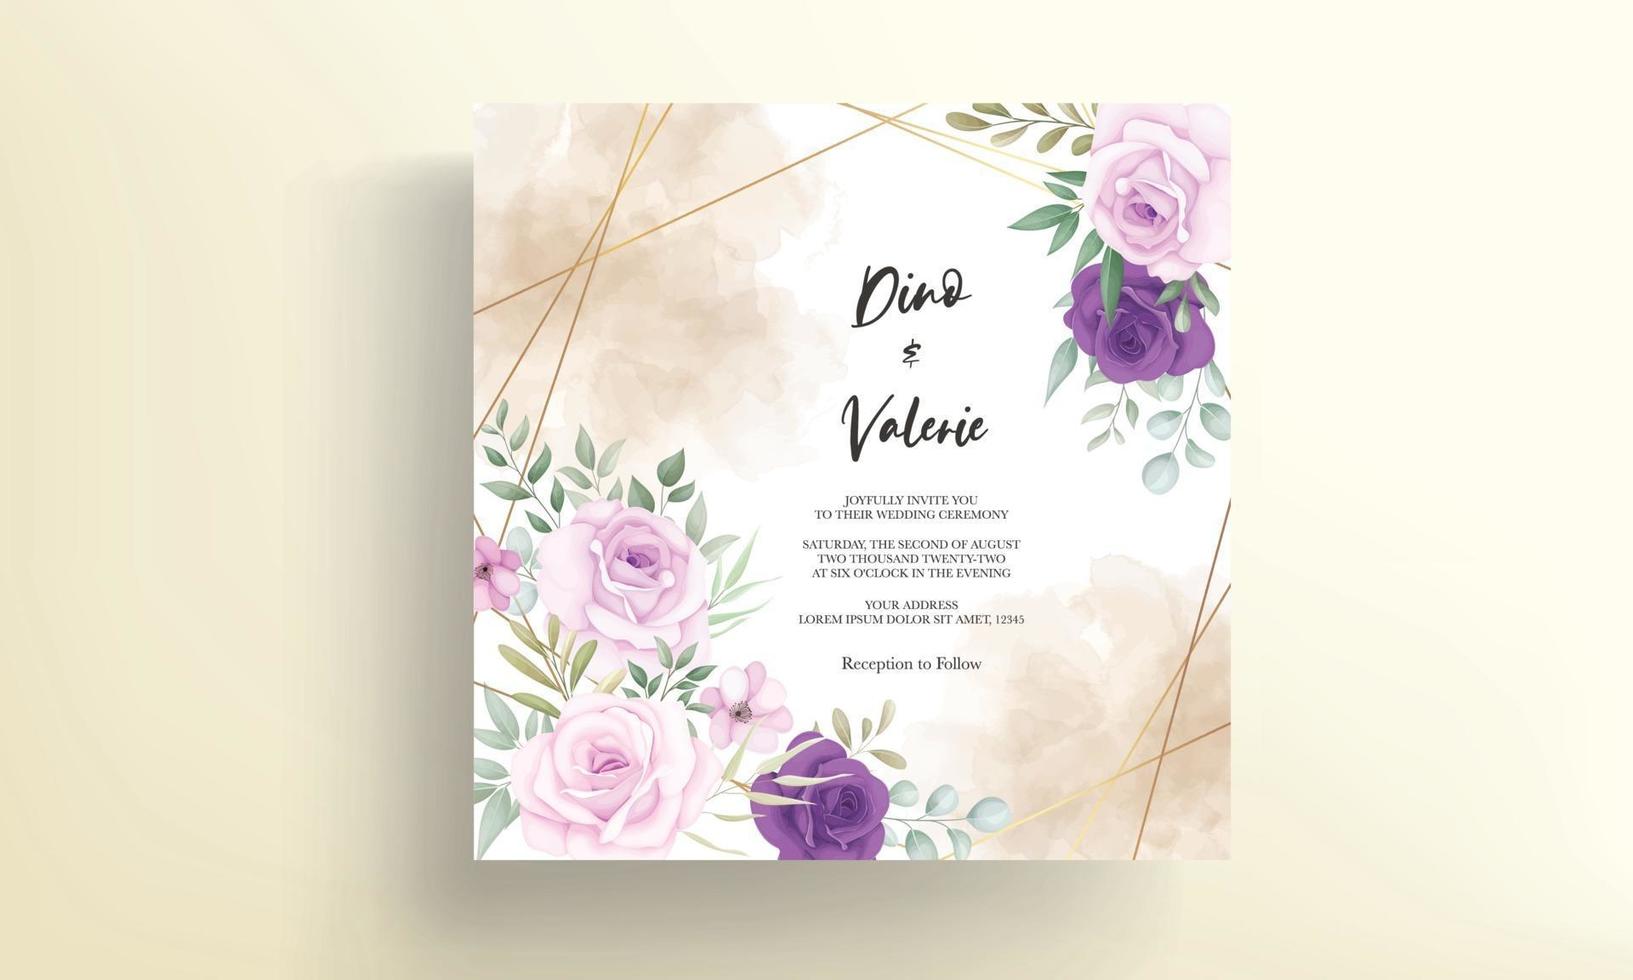 elegant bröllopsinbjudningskort med vackra blommiga dekorationer vektor